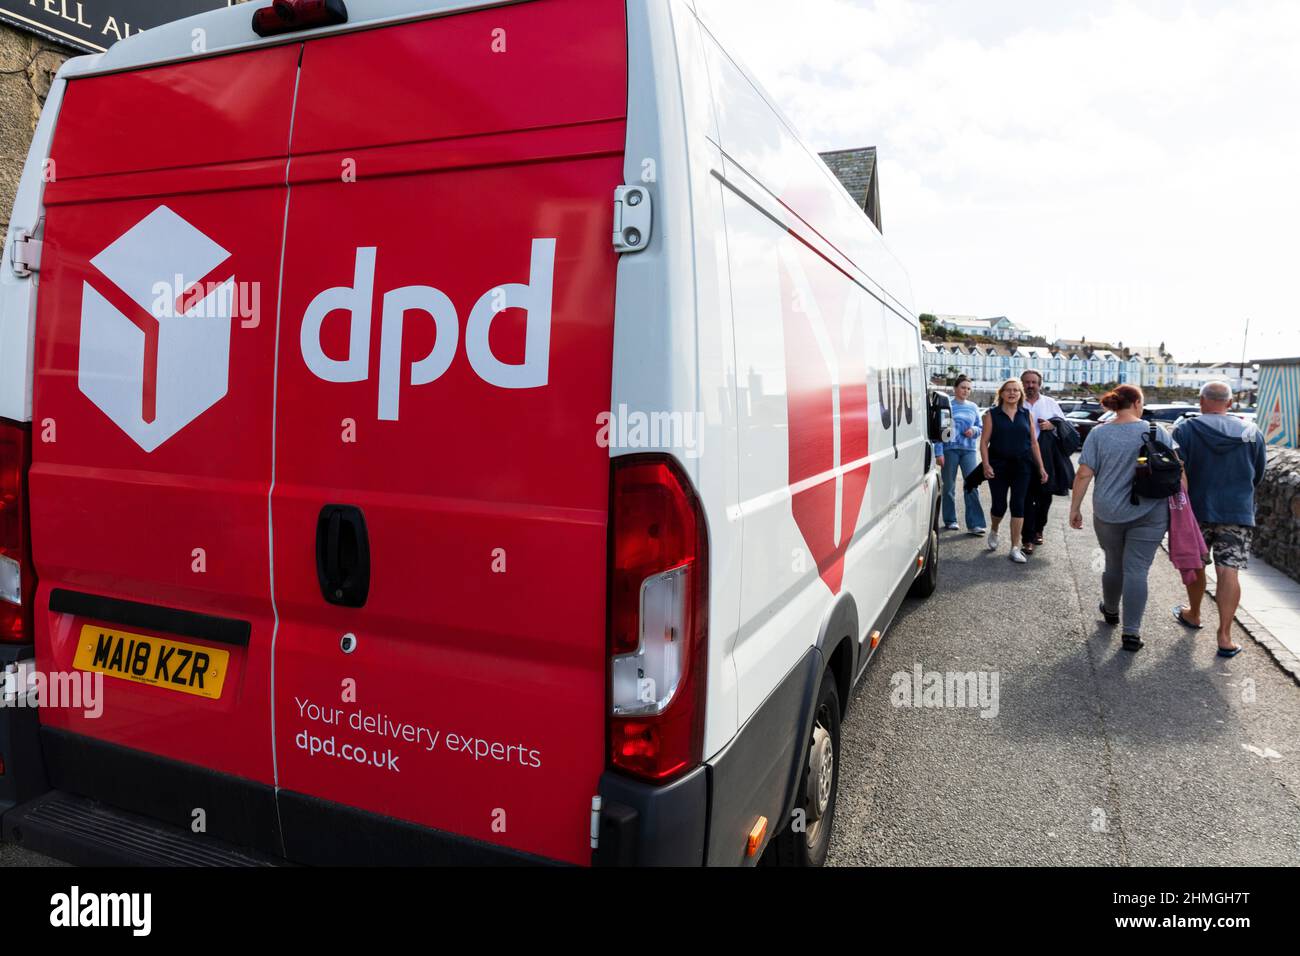 DPD, DPD delivery, DPD van, DPD delivery van, DPD sign, DPD logo, DPD vehicle, DPD symbol, DPD parcel delivery, delivery, DPD logistics, logistics, Stock Photo